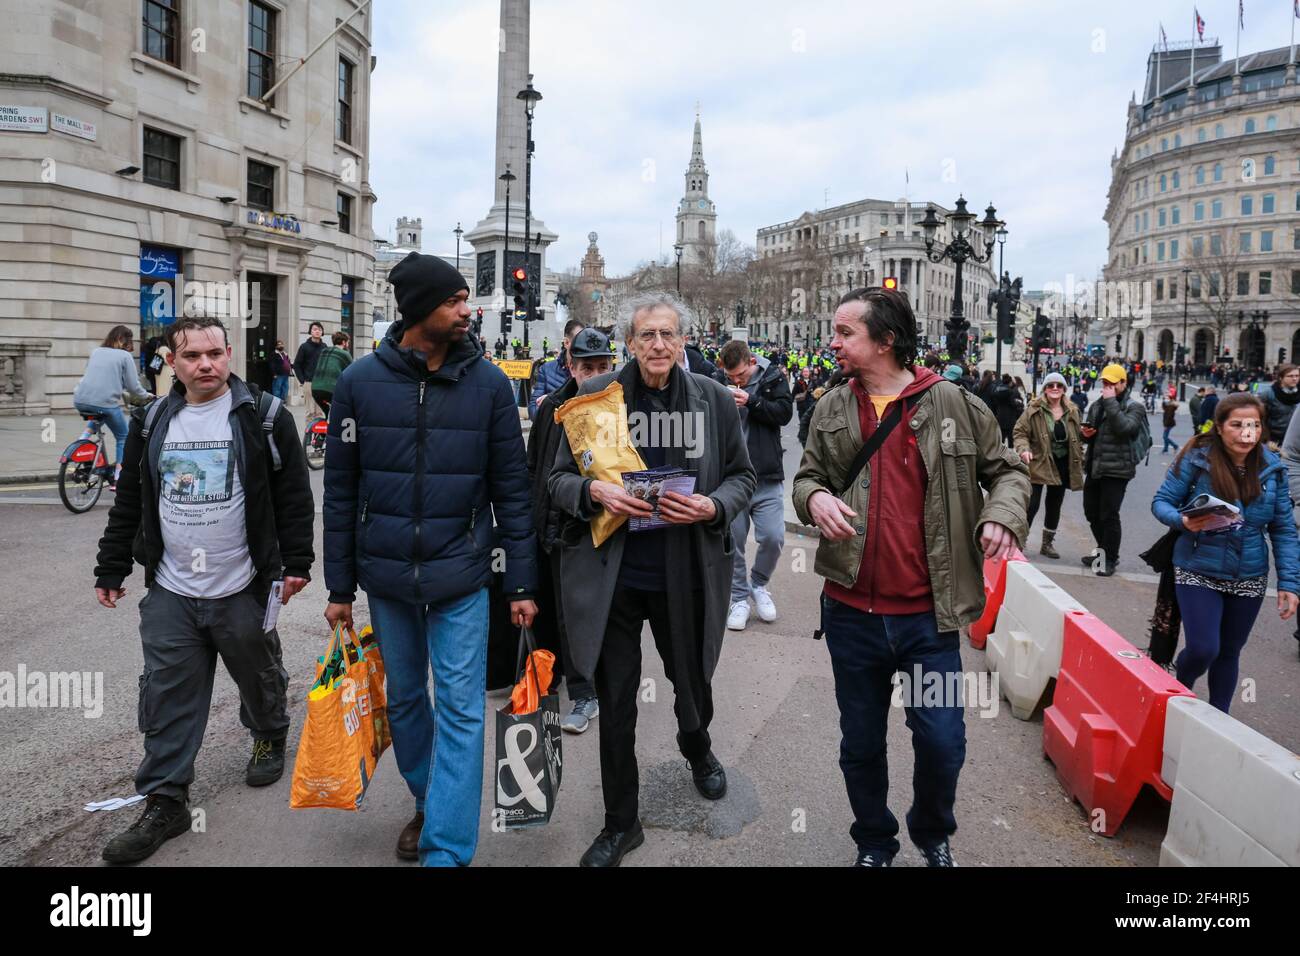 Londres, Royaume-Uni. 20 mars 2021. Piers Corbyn activiste lors d'une manifestation anti-verrouillage à Trafalgar Square dans le centre de Londres. Crédit: Waldemar Sikora Banque D'Images